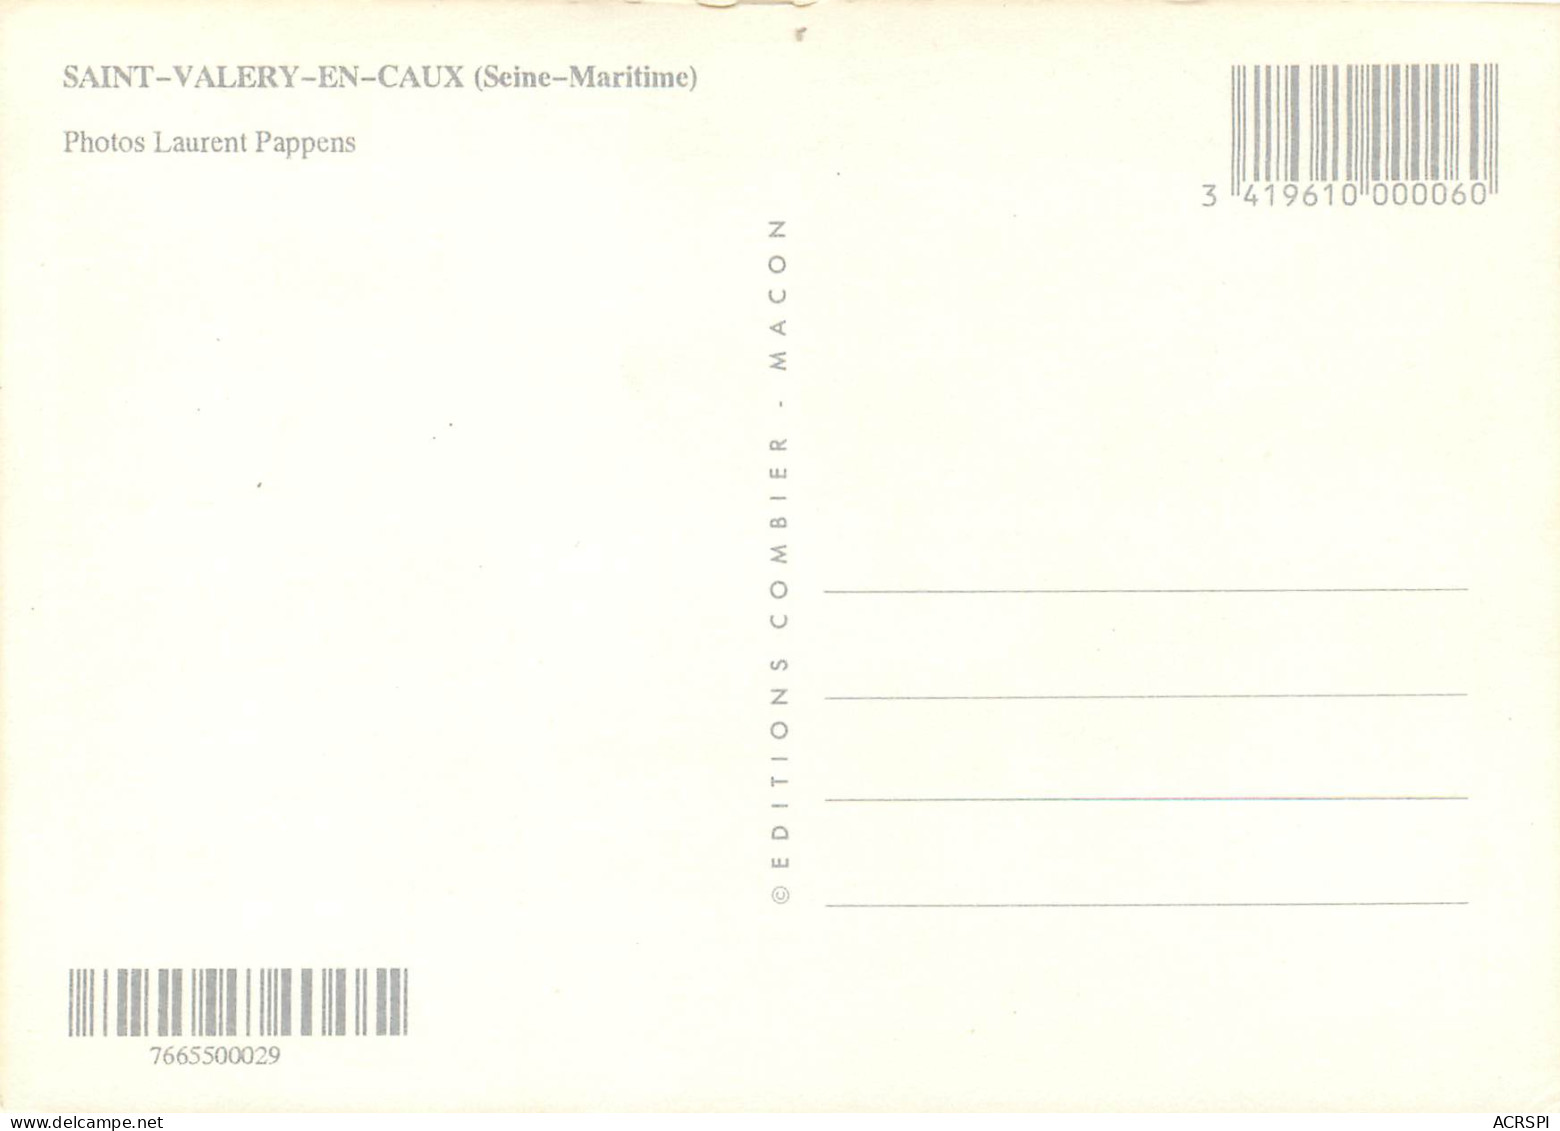 SAINT VALERY EN CAUX 17(scan Recto-verso) MD2512 - Saint Valery En Caux